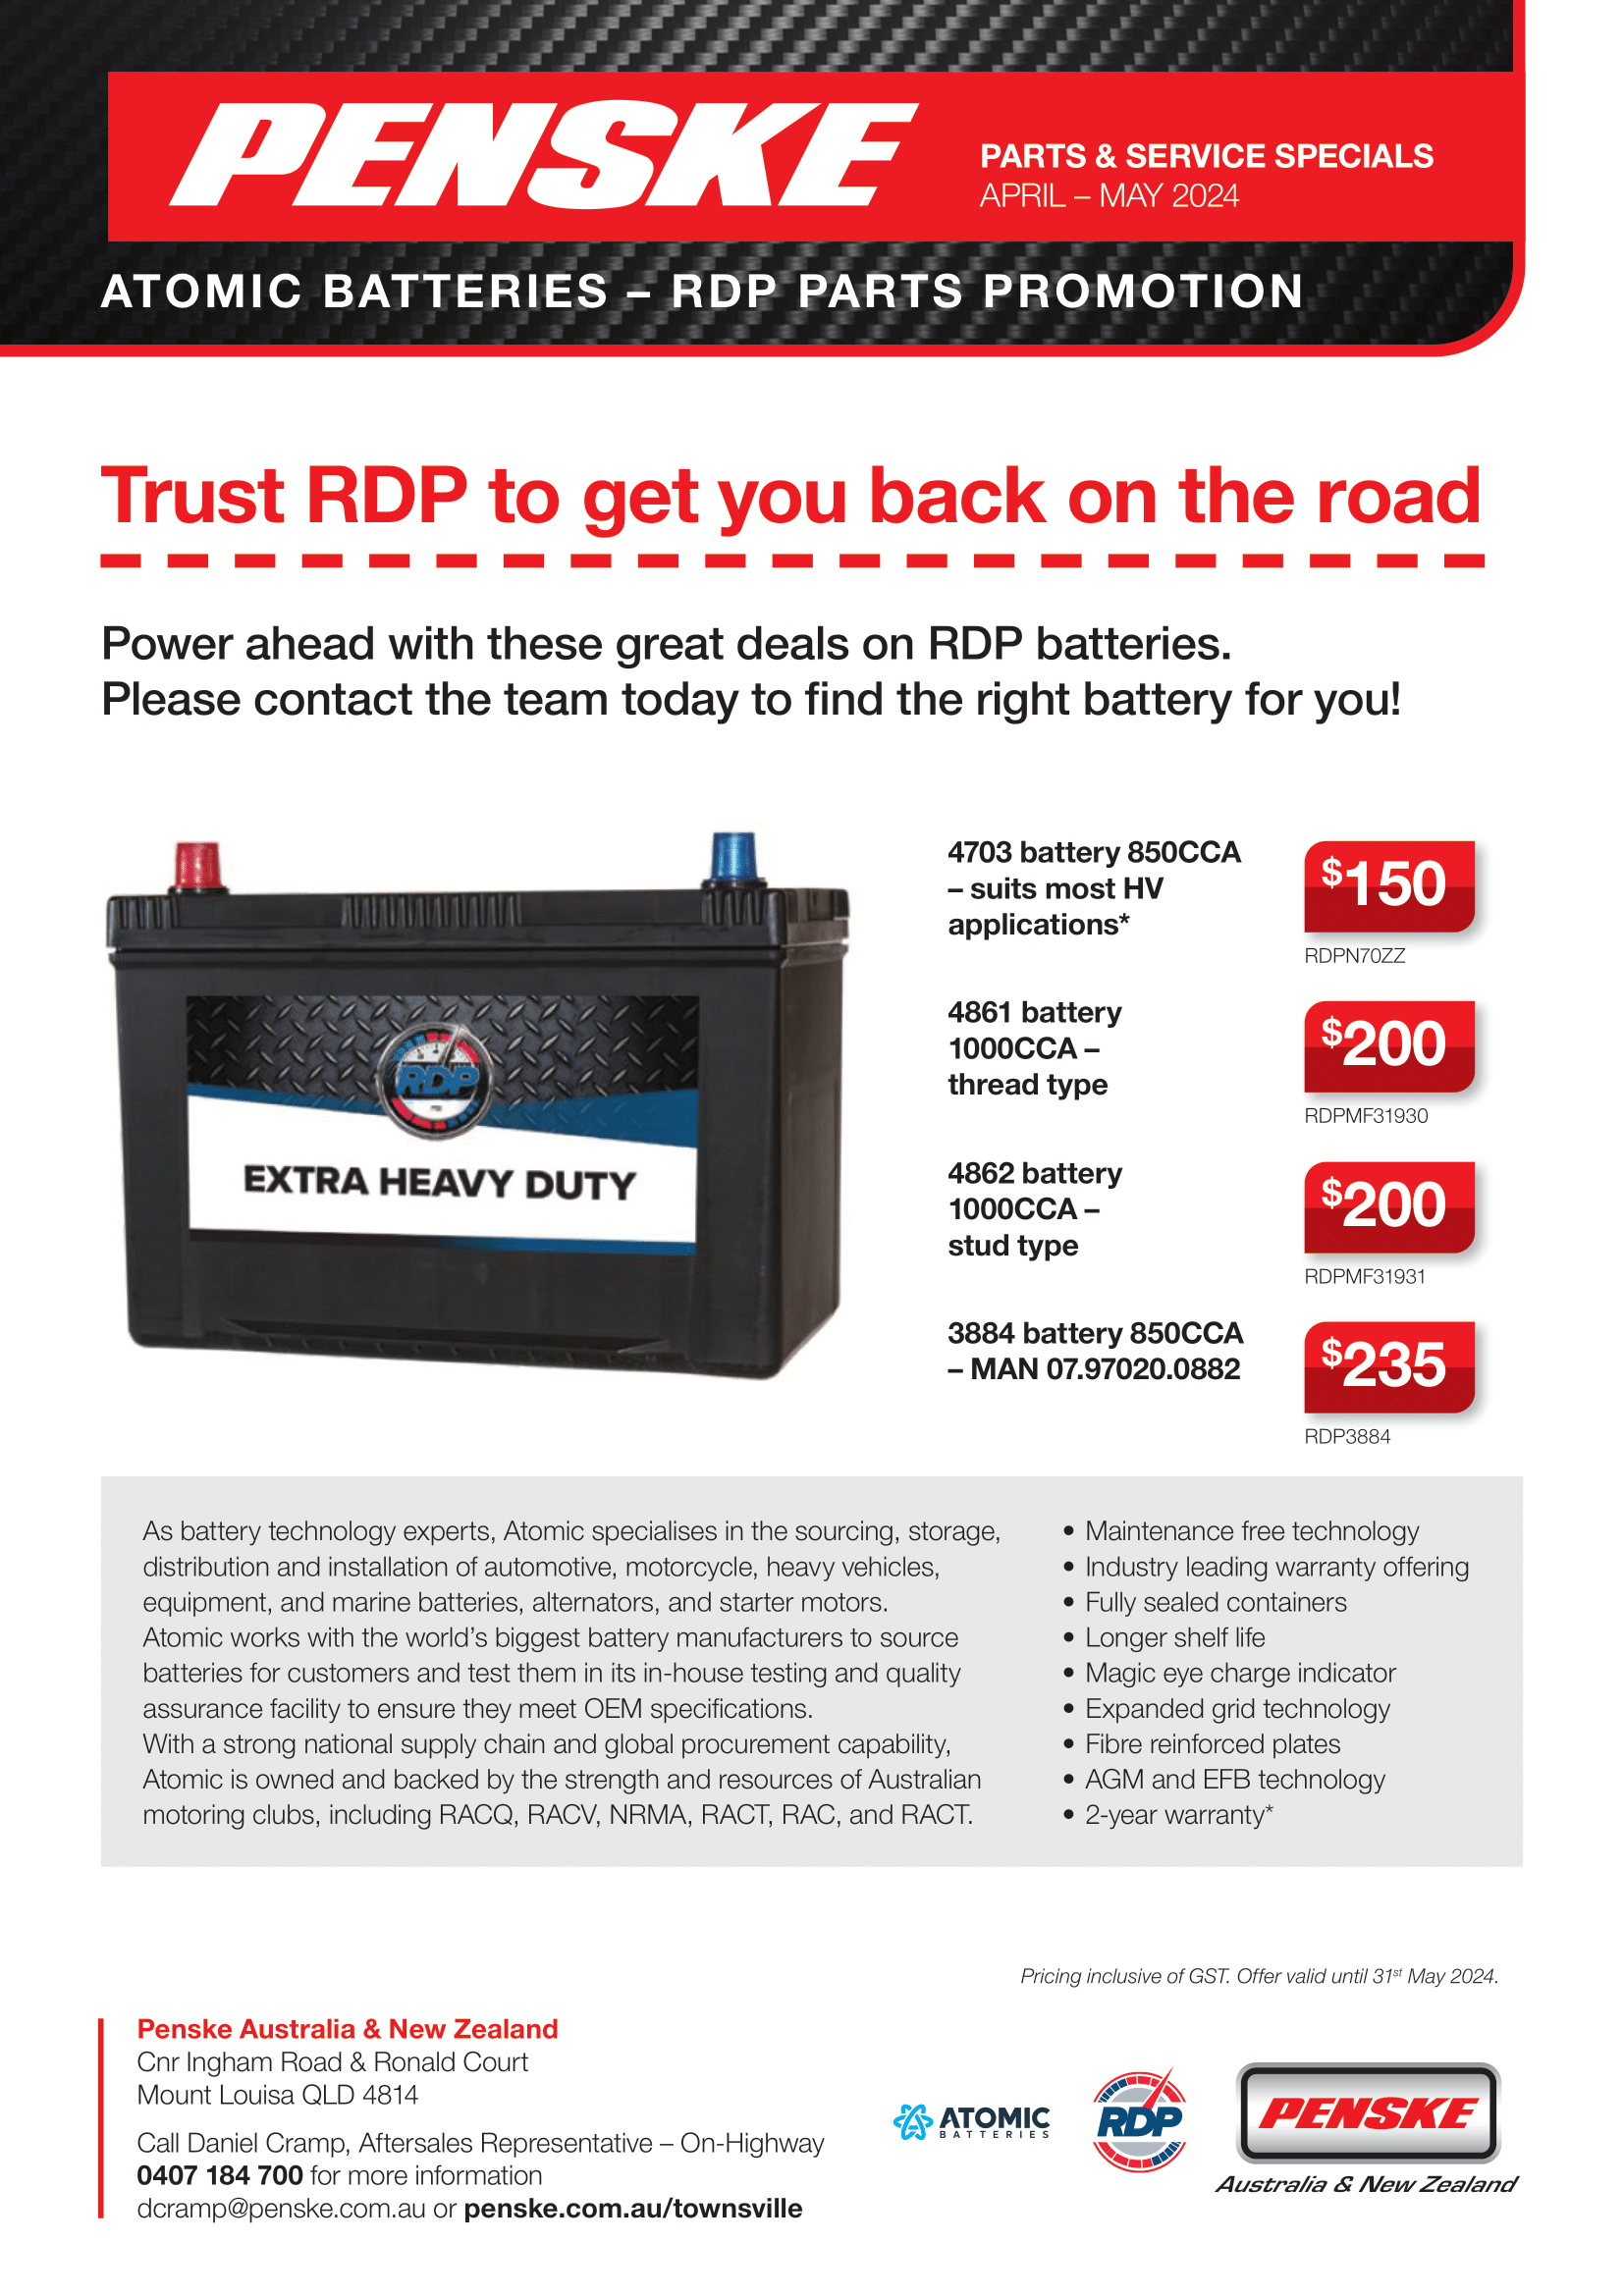 RDP Parts Promotion